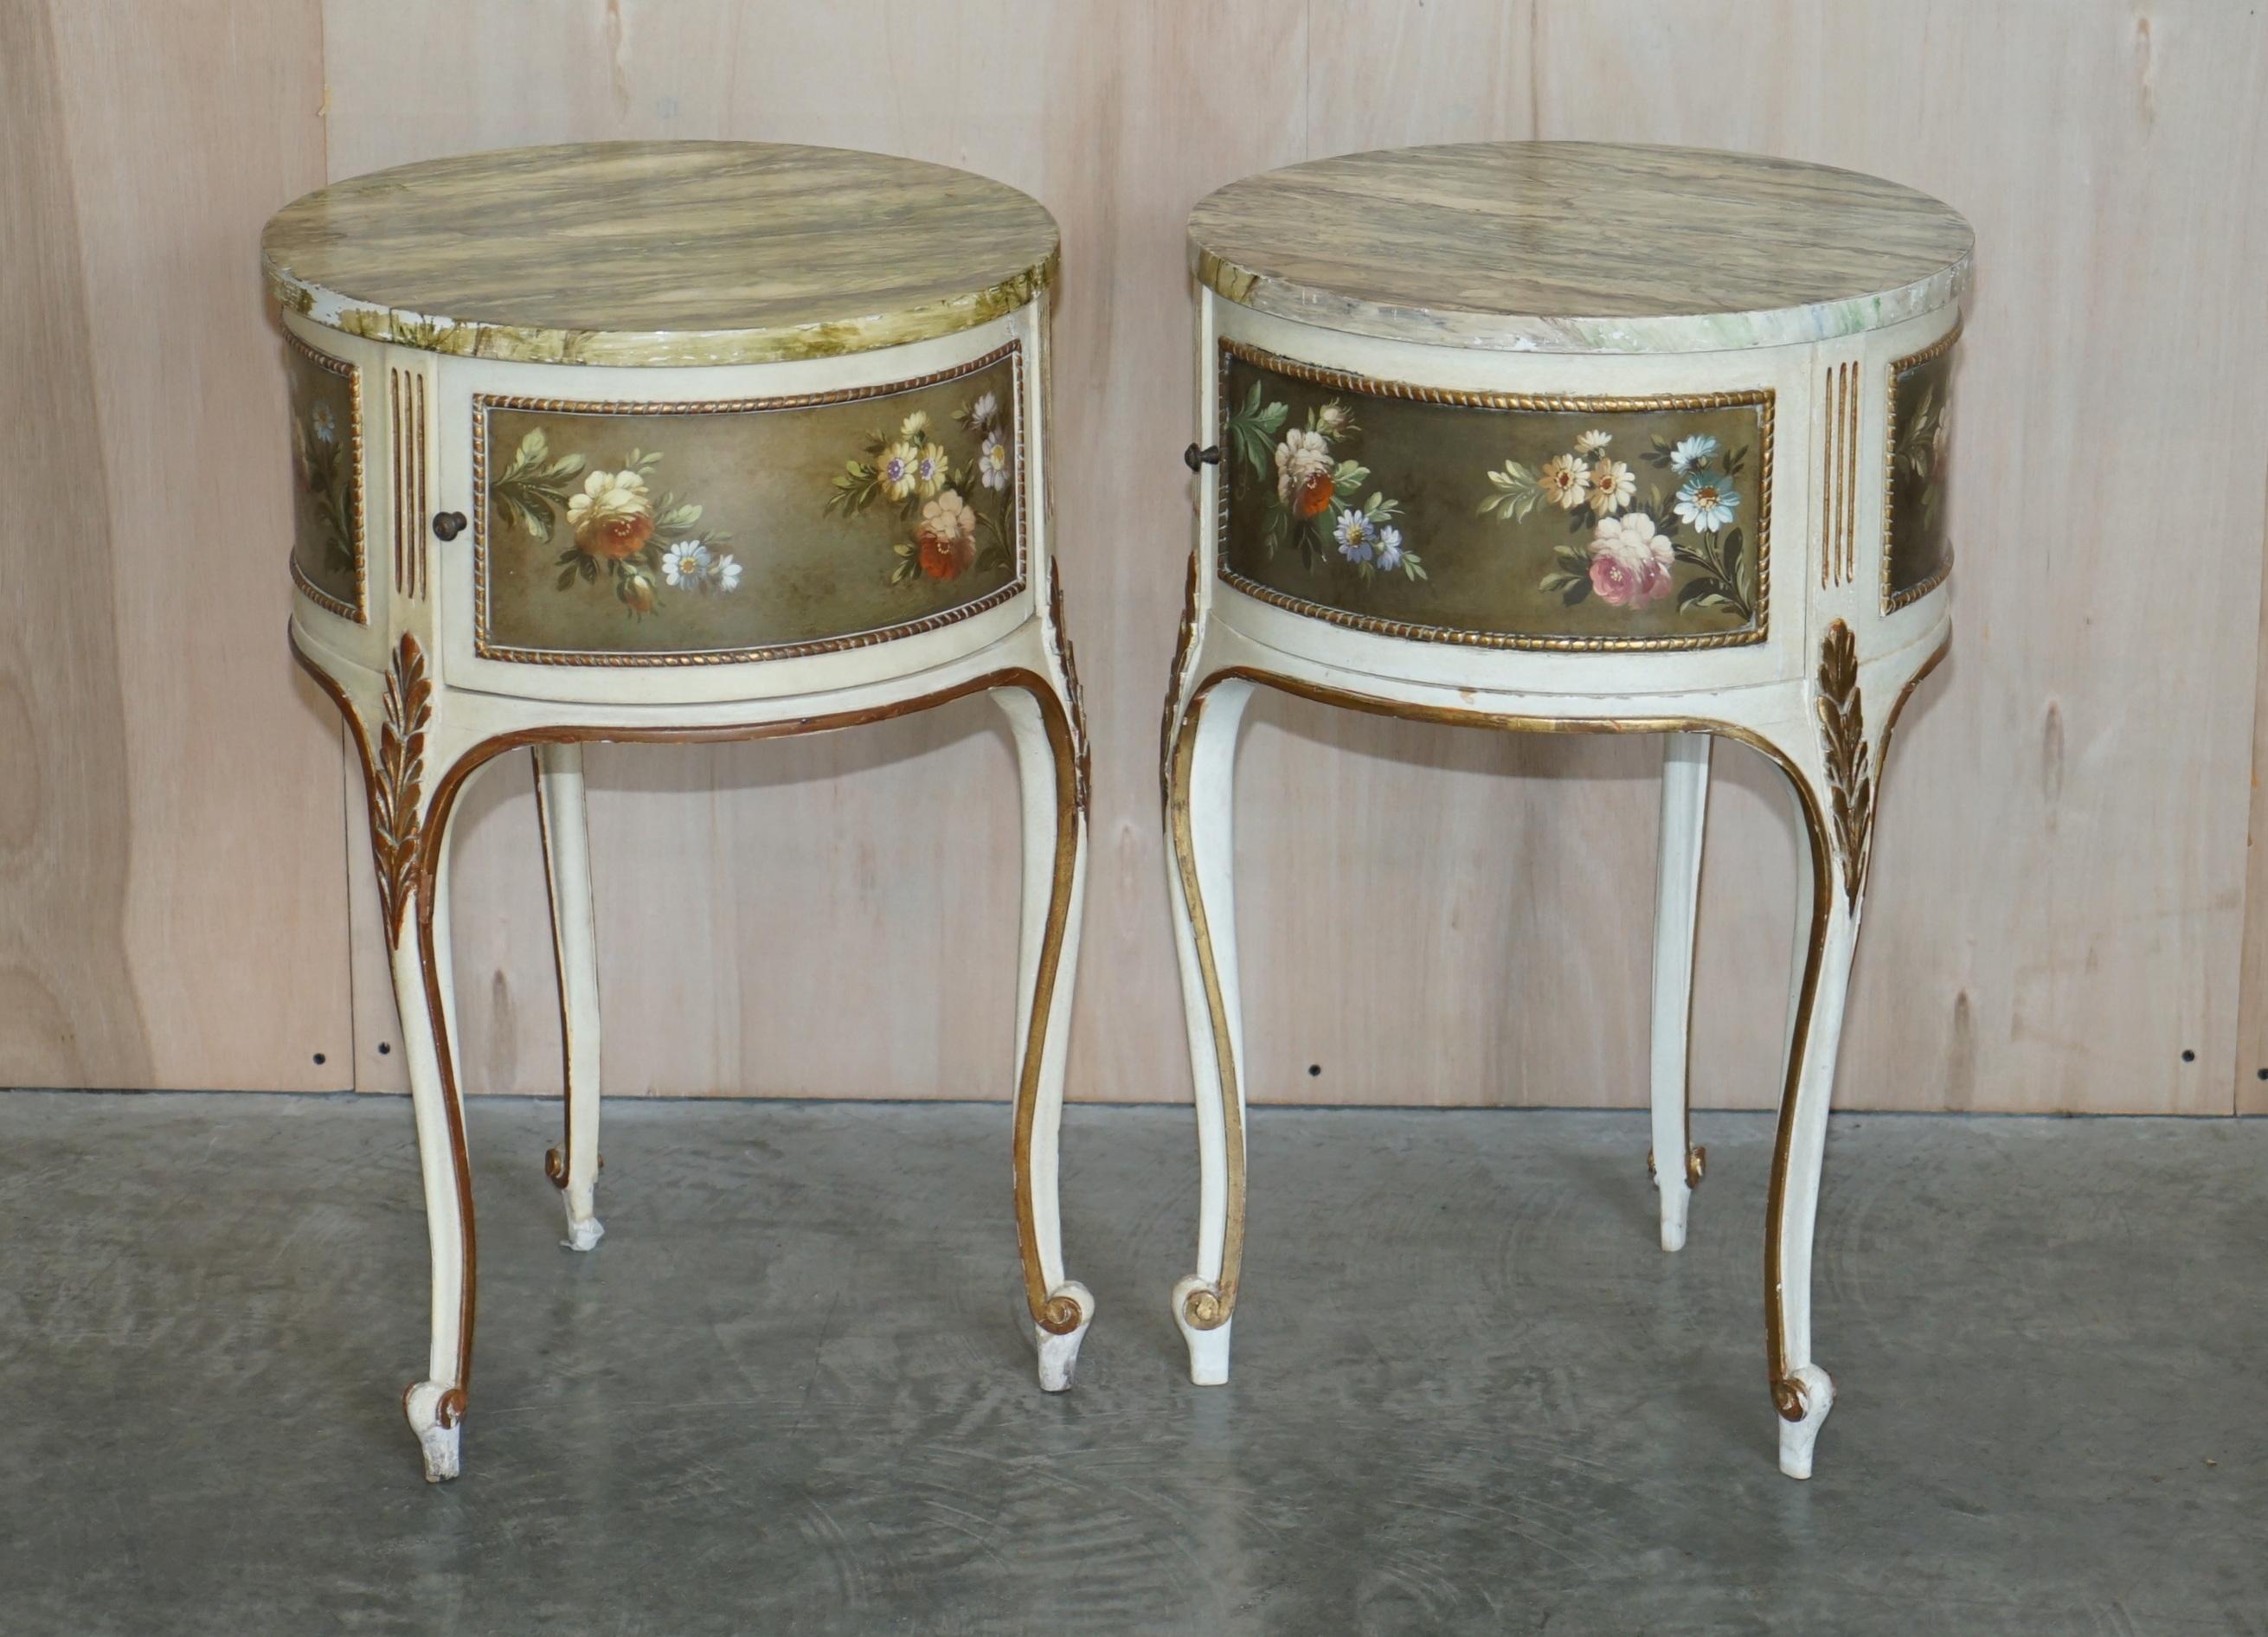 Nous sommes ravis d'offrir à la vente cette paire de tables d'appoint florales de style Louis XVI.

Une paire de tables bien faites et décoratives, elles sont aussi fines qu'une maison de campagne française, chaque table a un dessus marbré qui est